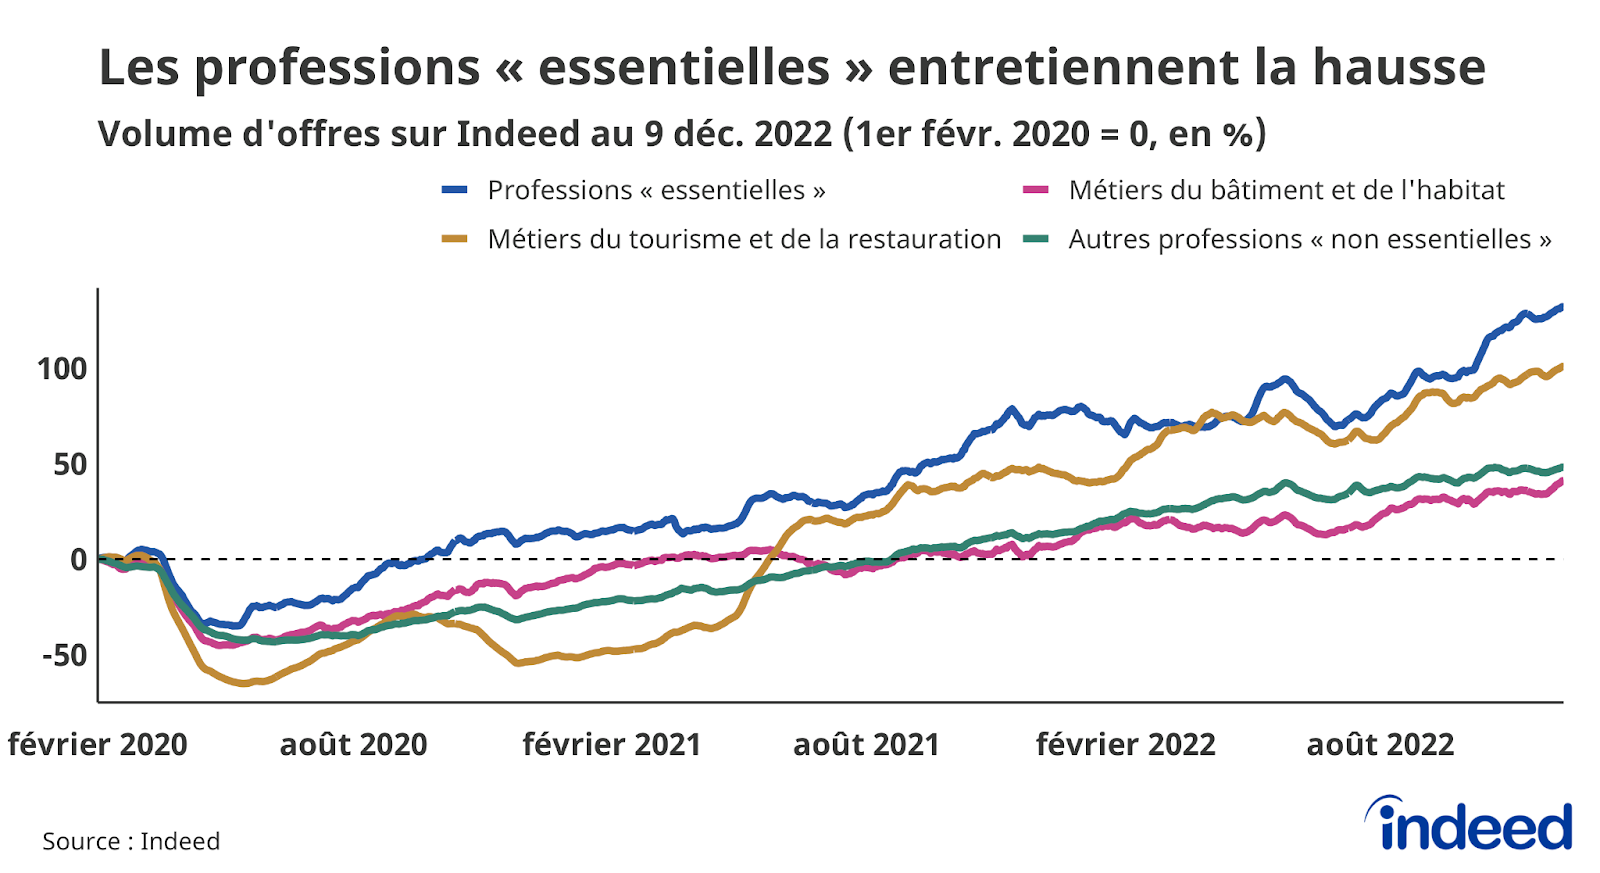 Le graphique en courbes illustre l’évolution, par rapport à la référence du 1er février 2020, du volume d’offres d’emploi (en abscisses) en fonction du temps (en ordonnées), jusqu’au 9 décembre 2022